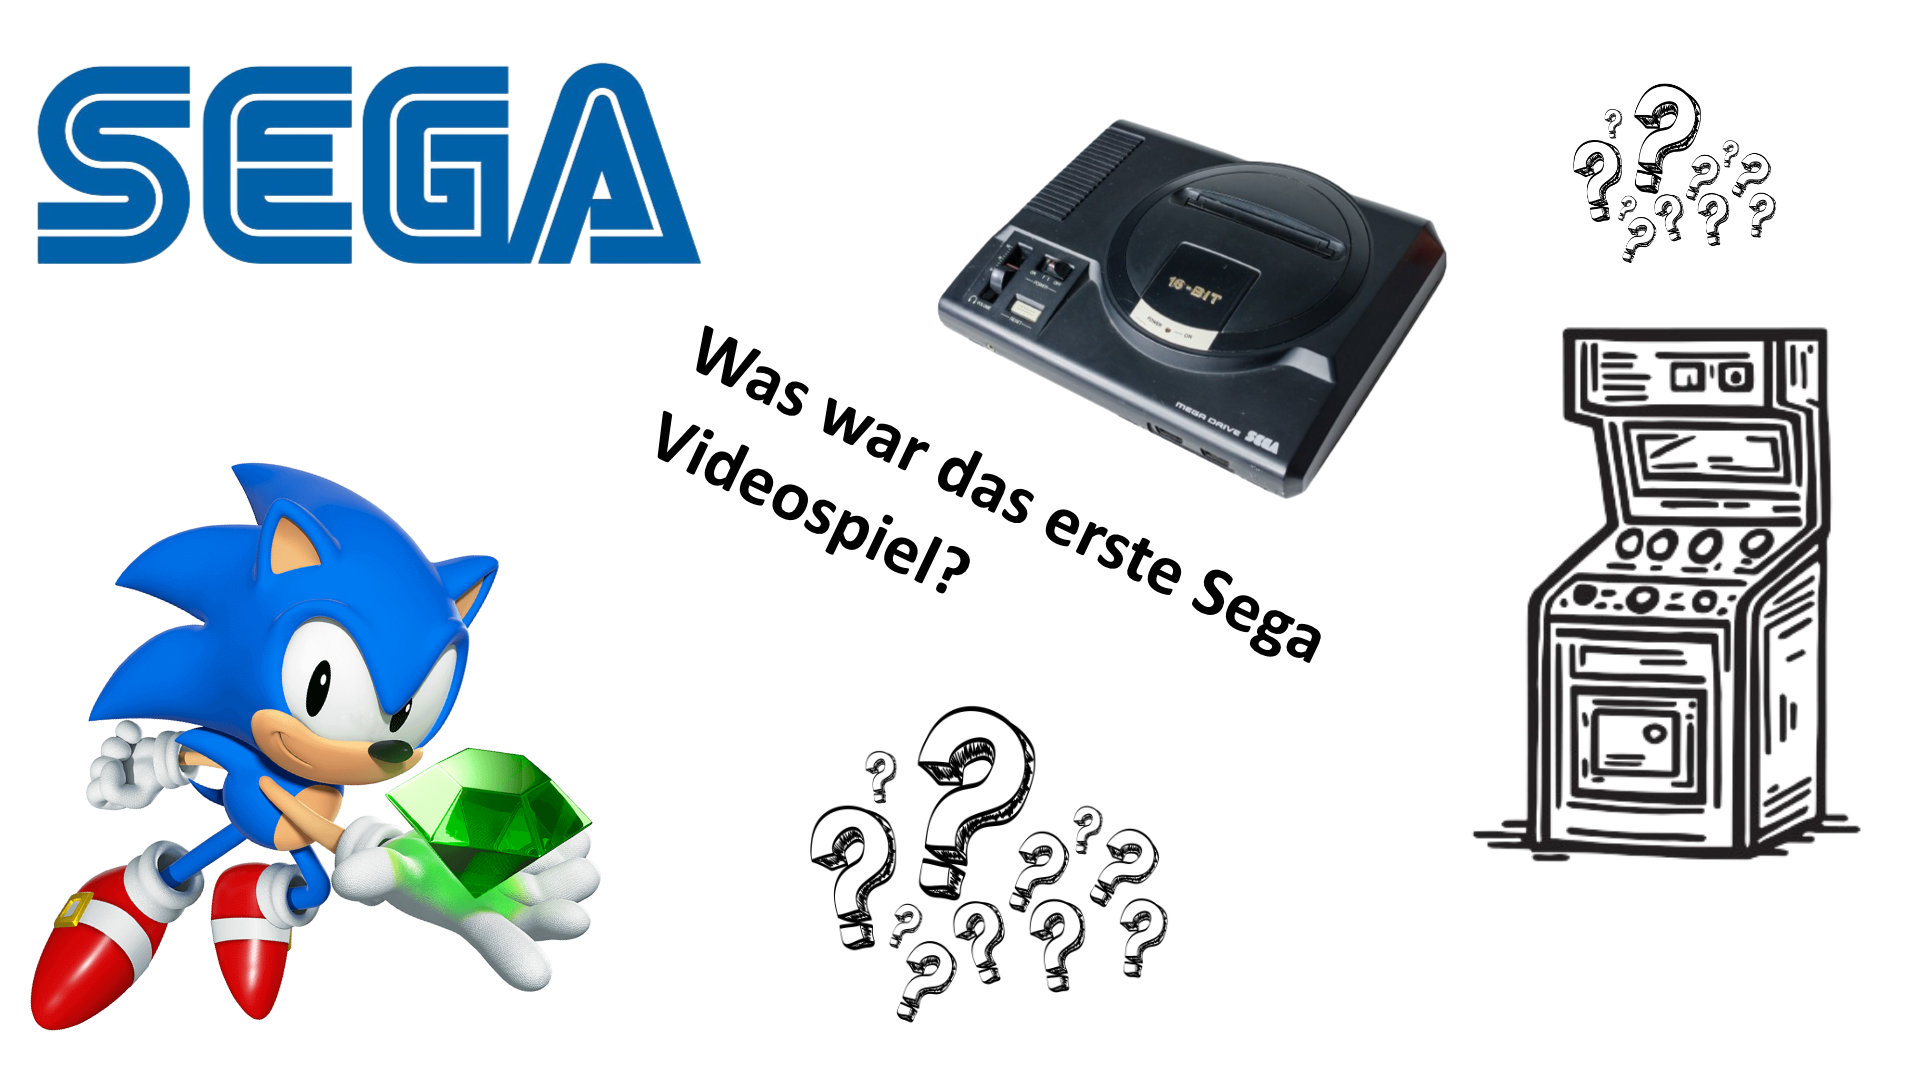 Sega: Was war das erste Sega Videospiel?